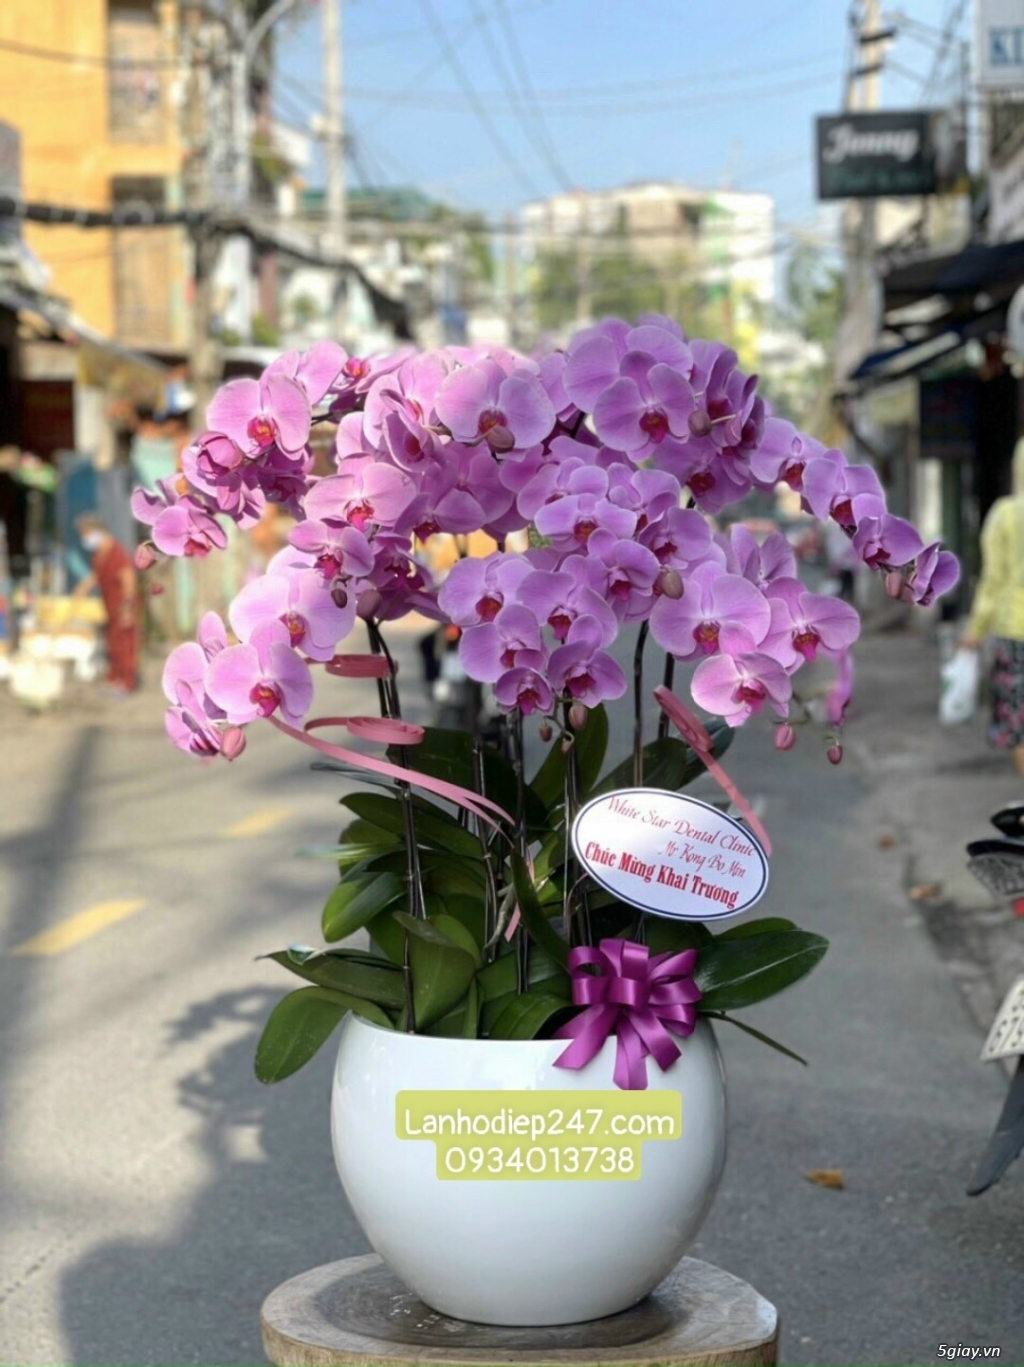 Shop hoa tuoi sai gon 24/7 chuyên cung cấp Lan Hồ Điệp hàng đầu tphcm - 14